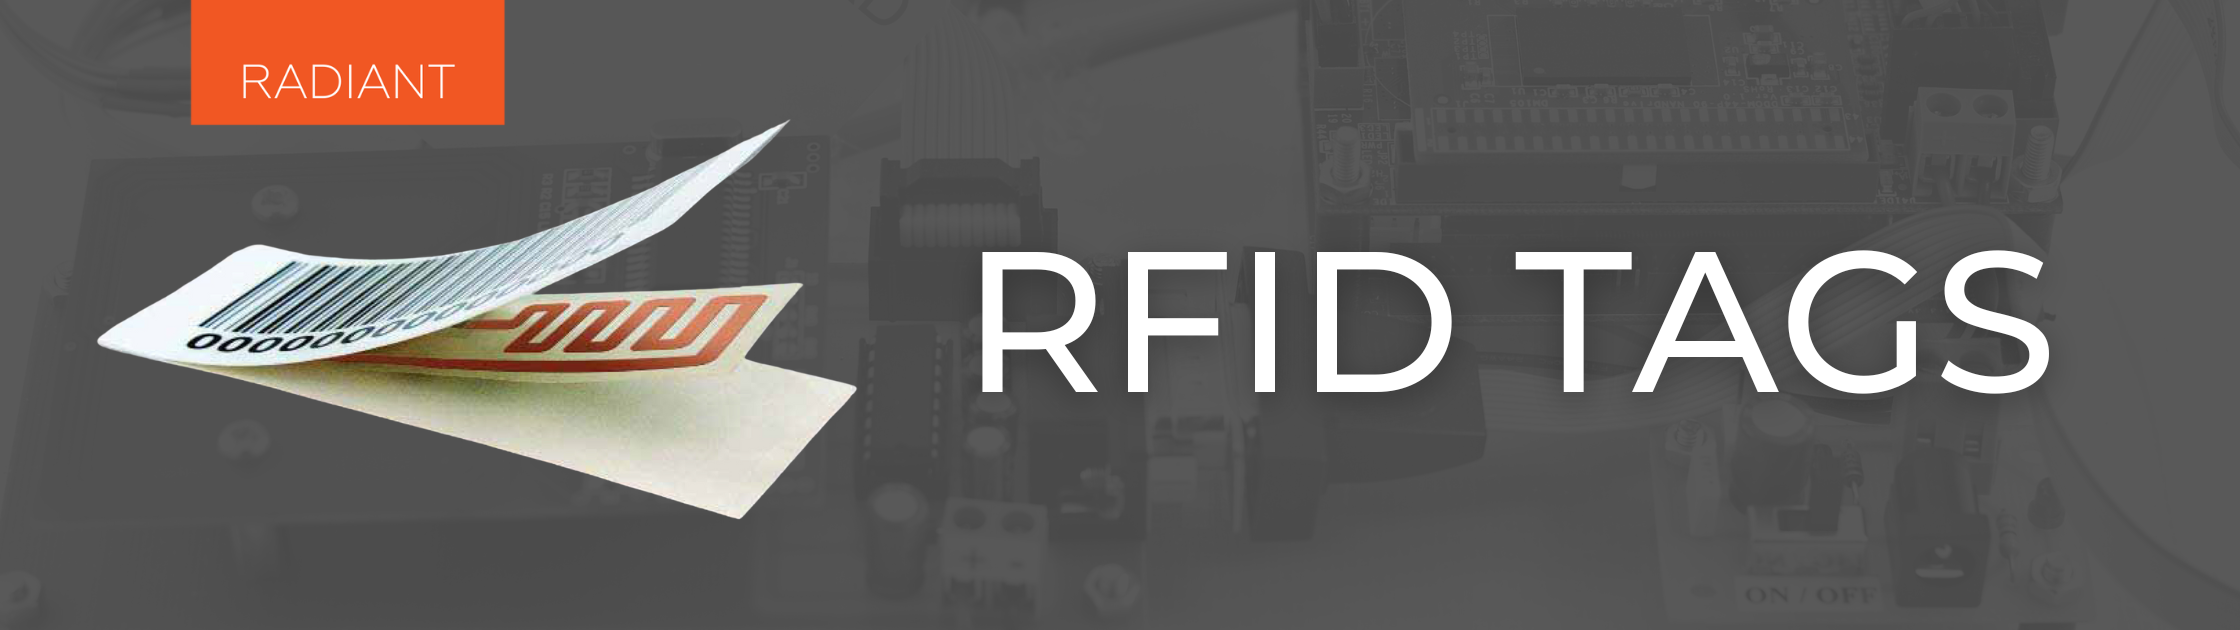 RFID System - RFID Systems - RFID System Components of an RFID Solution - RFID System Components - RFID Tags - RFID Parts - RFID Asset Tags - RFID Tags and Readers - RFID Solutions